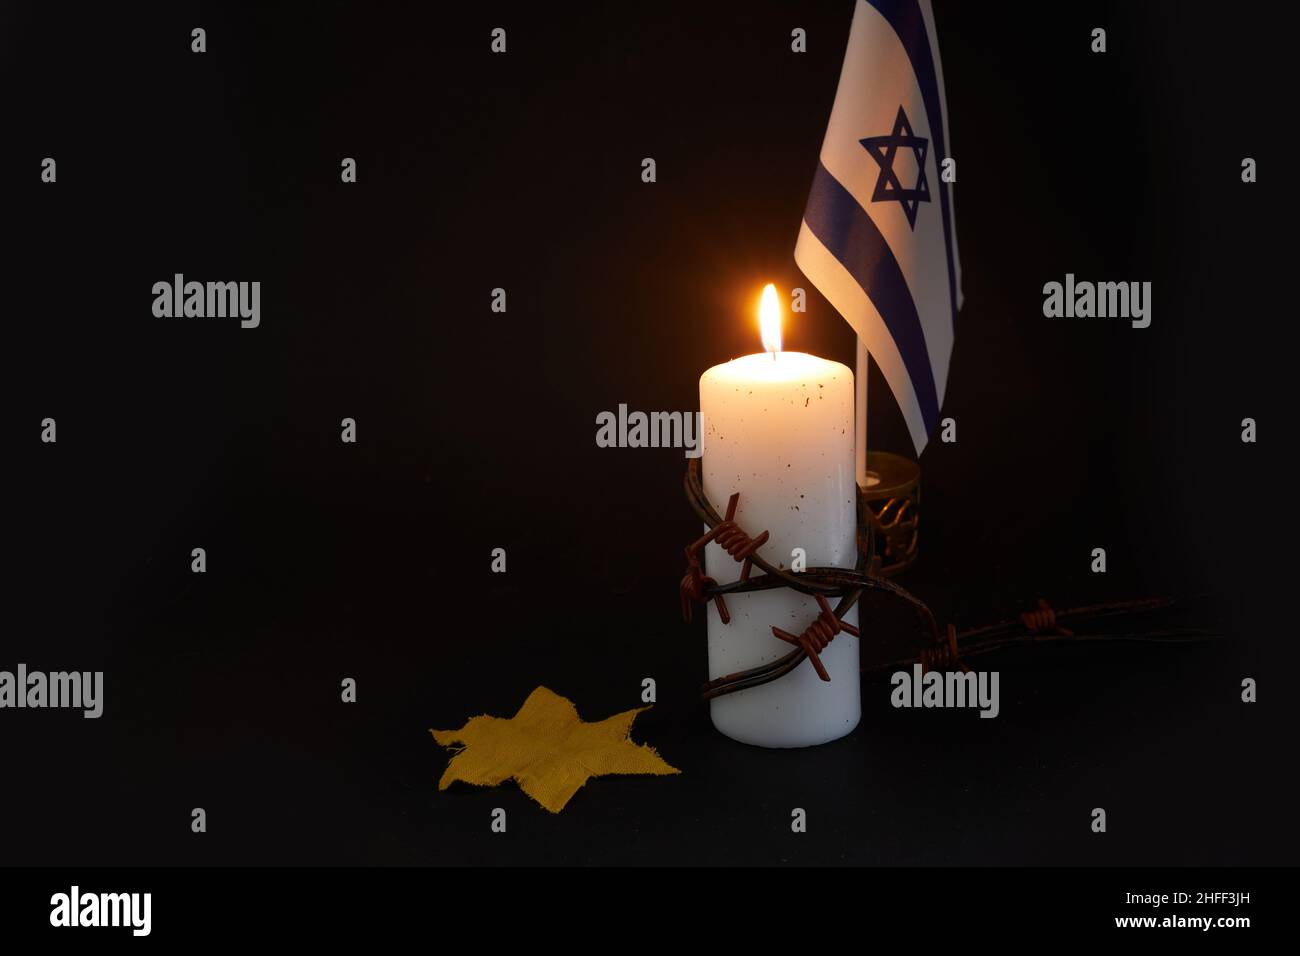 Holocaust-Gedächtnistag. ARBED Draht und brennende Kerze auf schwarzem Hintergrund Stockfoto